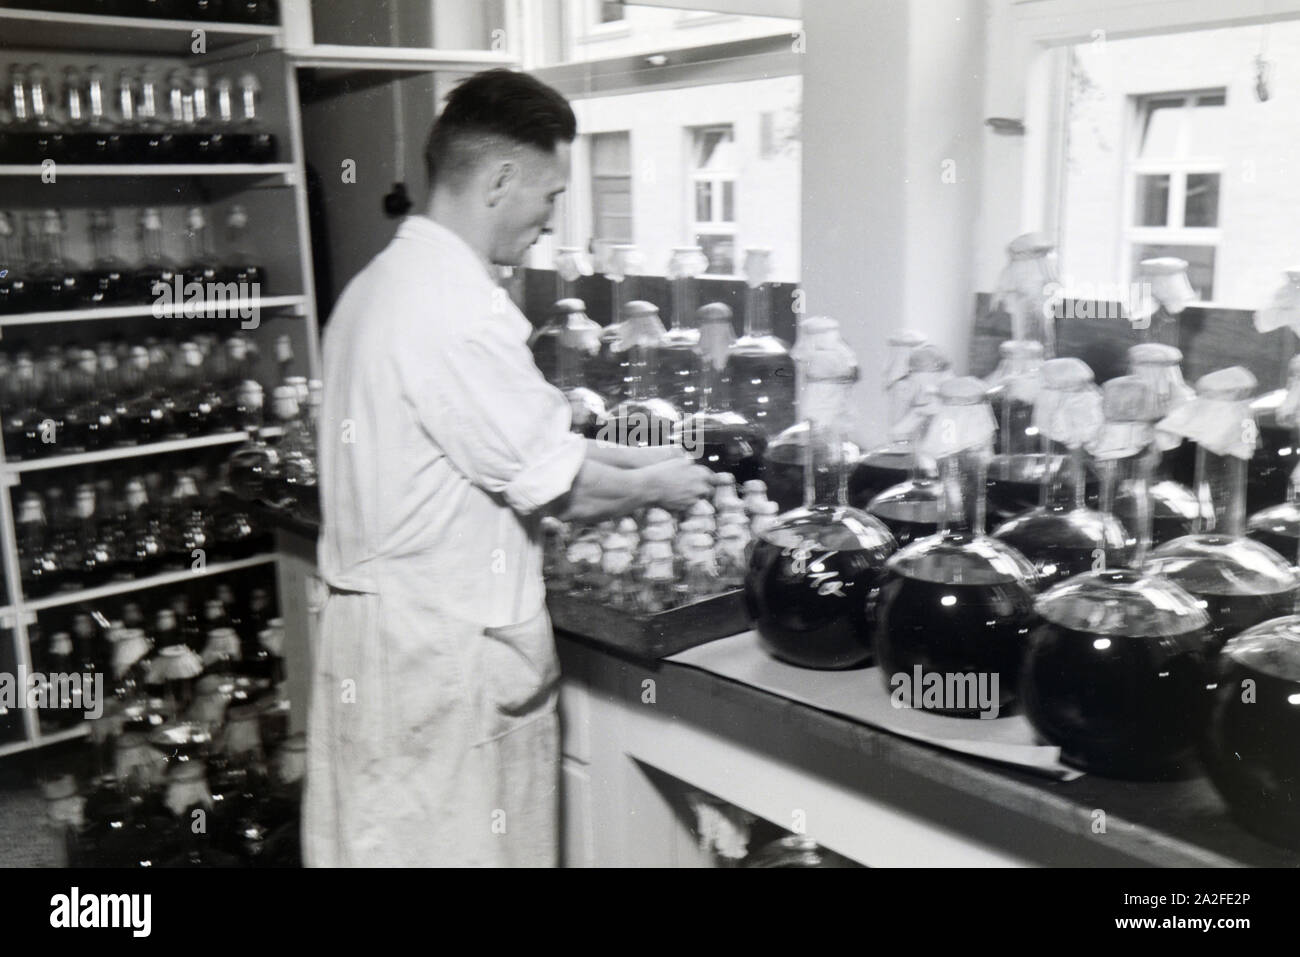 Ein Laborant beschriftet abgefüllte Medikamentenproben in Arbeit der Behringwerke, Marburg, Deutschland 1930er Jahre. Eine Lab Assistant ist die Etikettierung der Flasche Medizin Proben in ein Labor der Behringwerke, Marburg, Deutschland 1930. Stockfoto